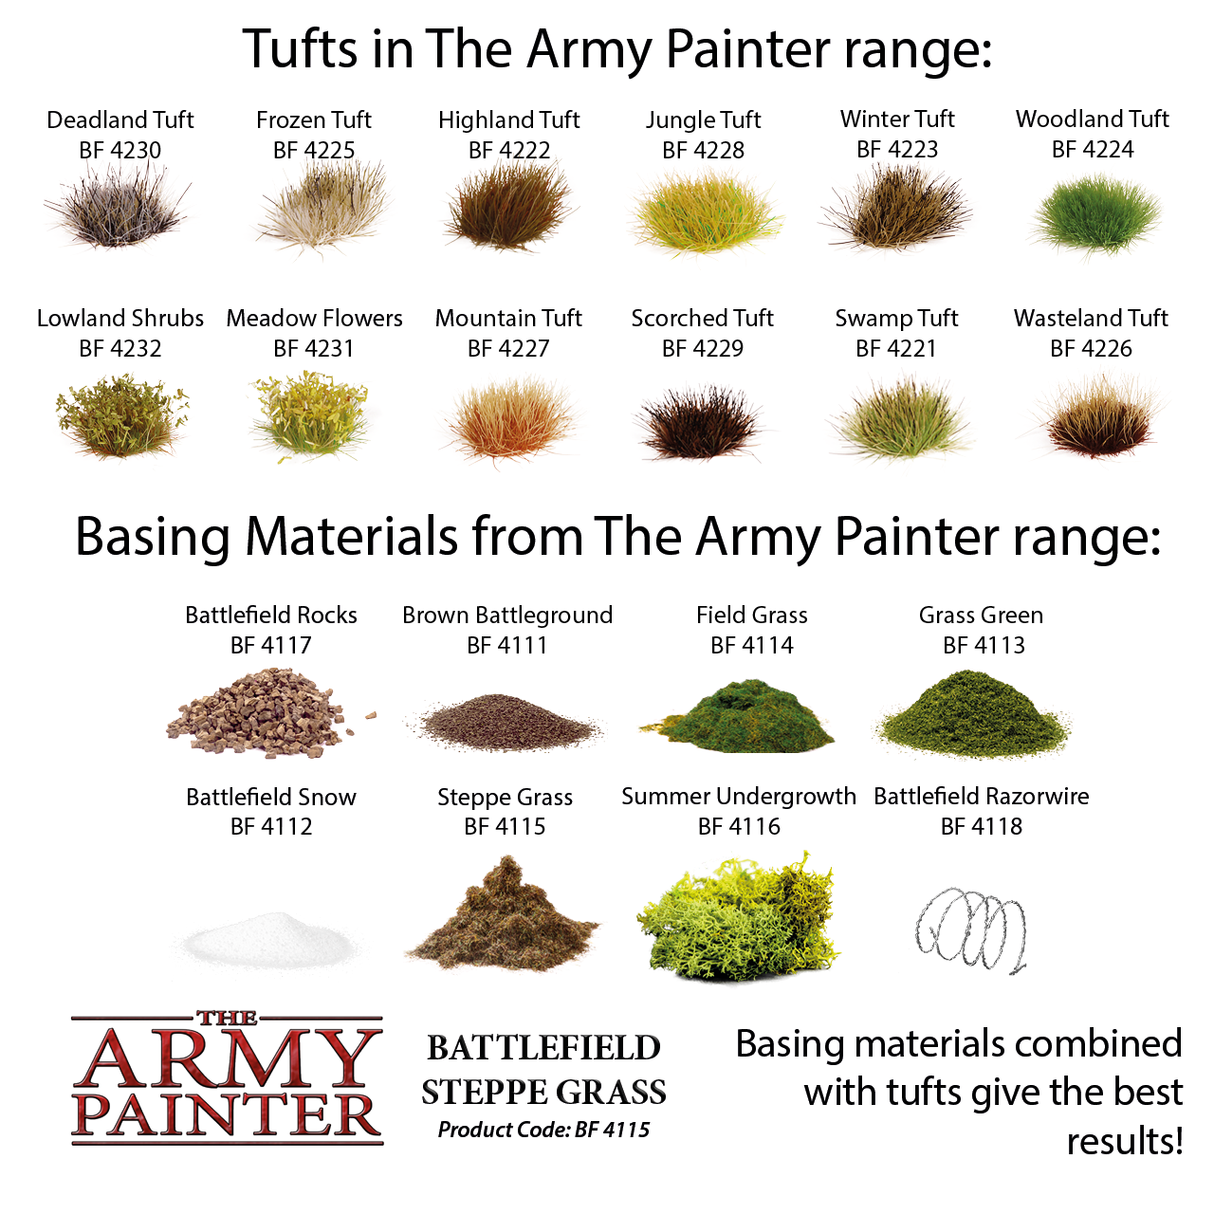 Army Painter Battlefield Steppe Grass